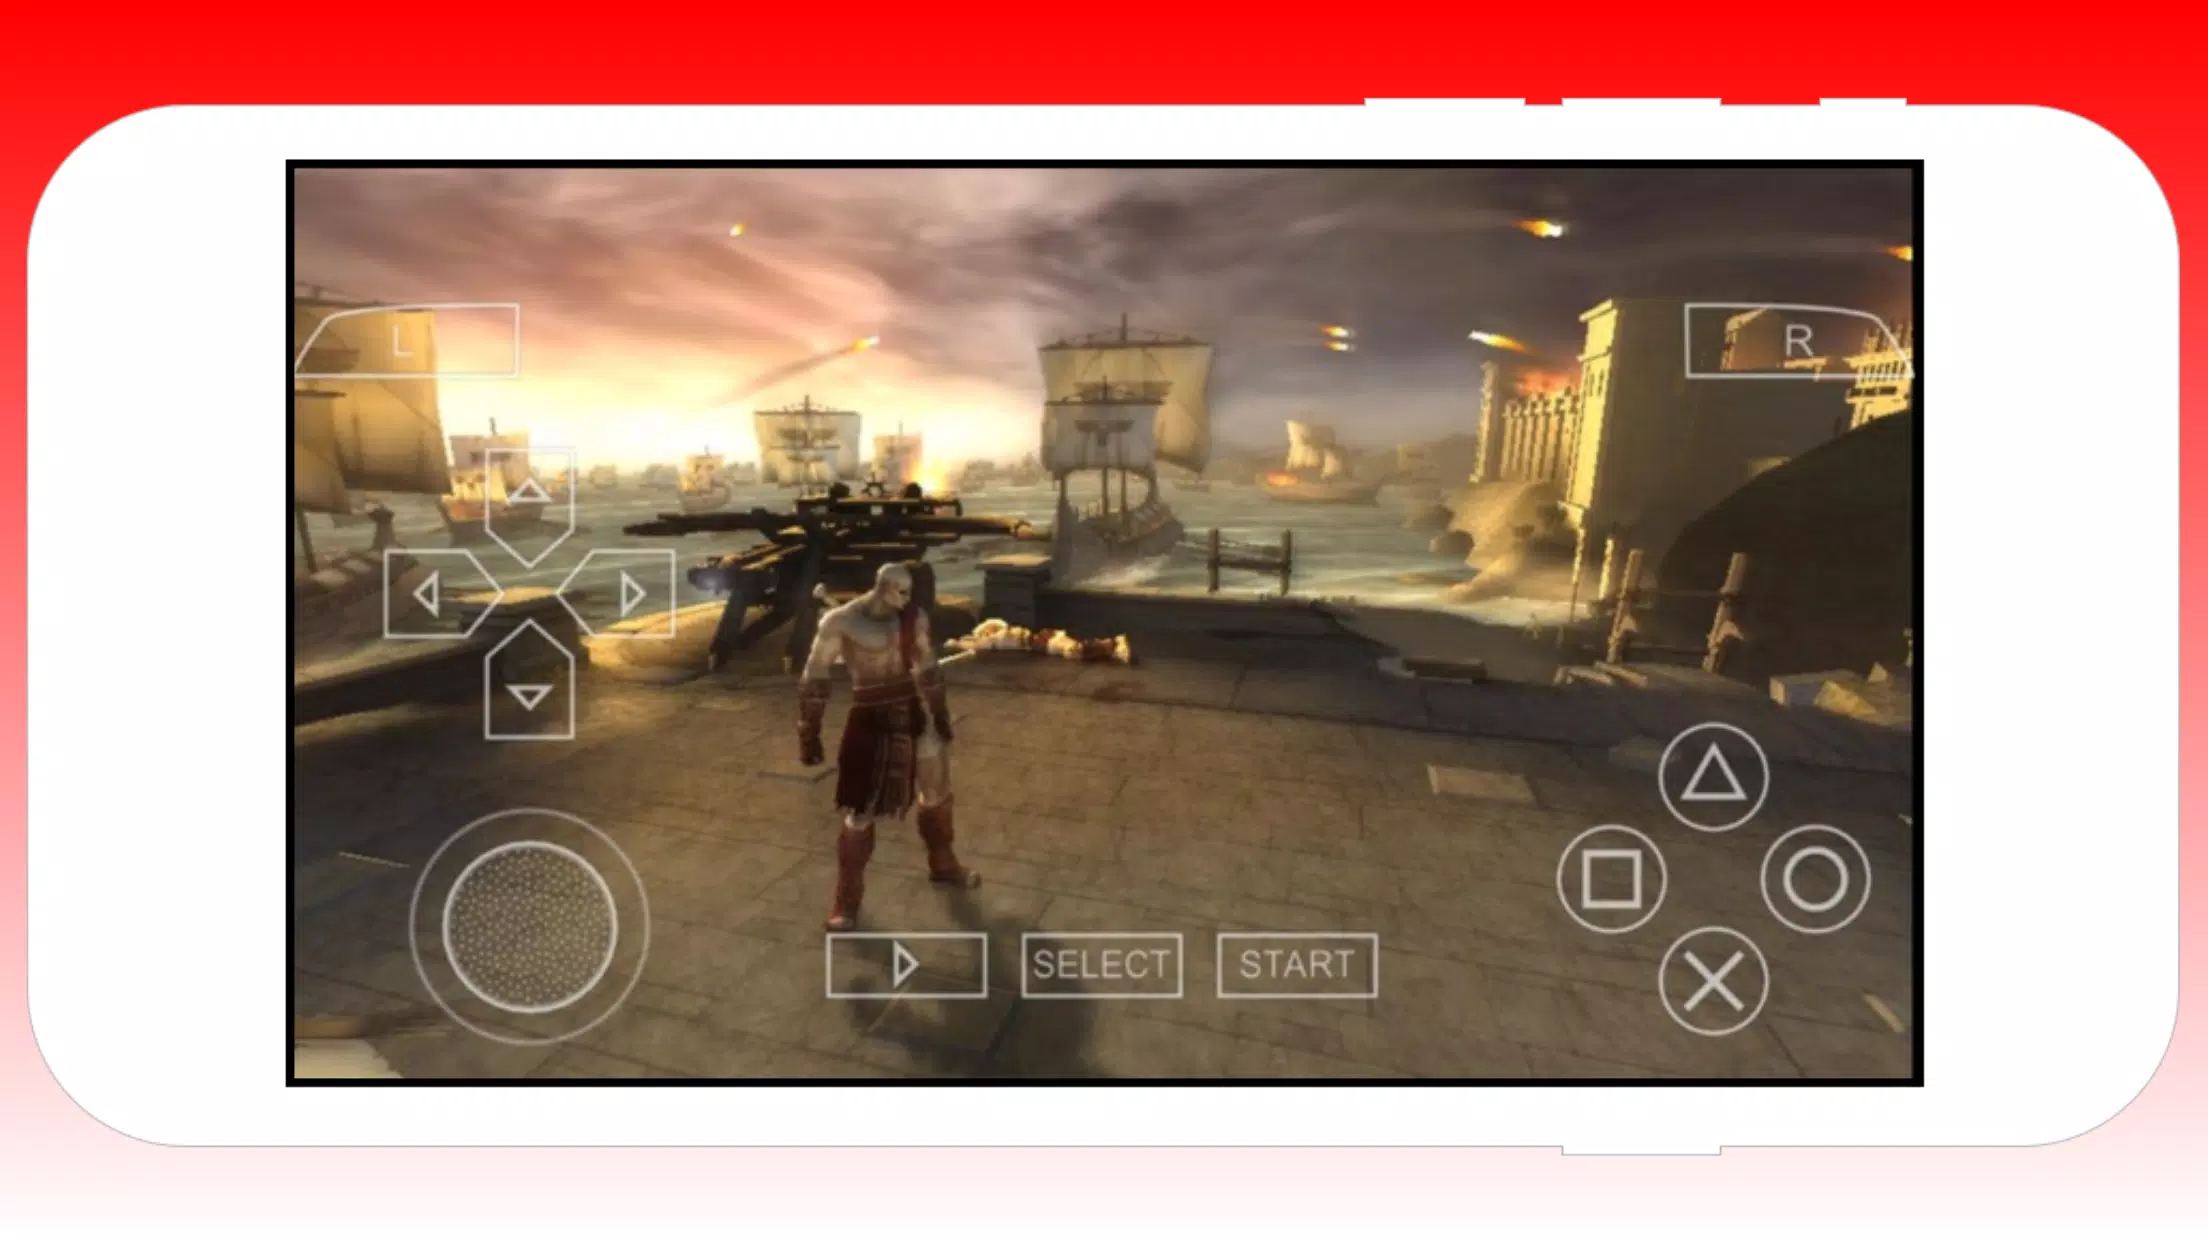 Descarga de APK de Emulador de PSP juegos para Android: PSP Emulator para  Android